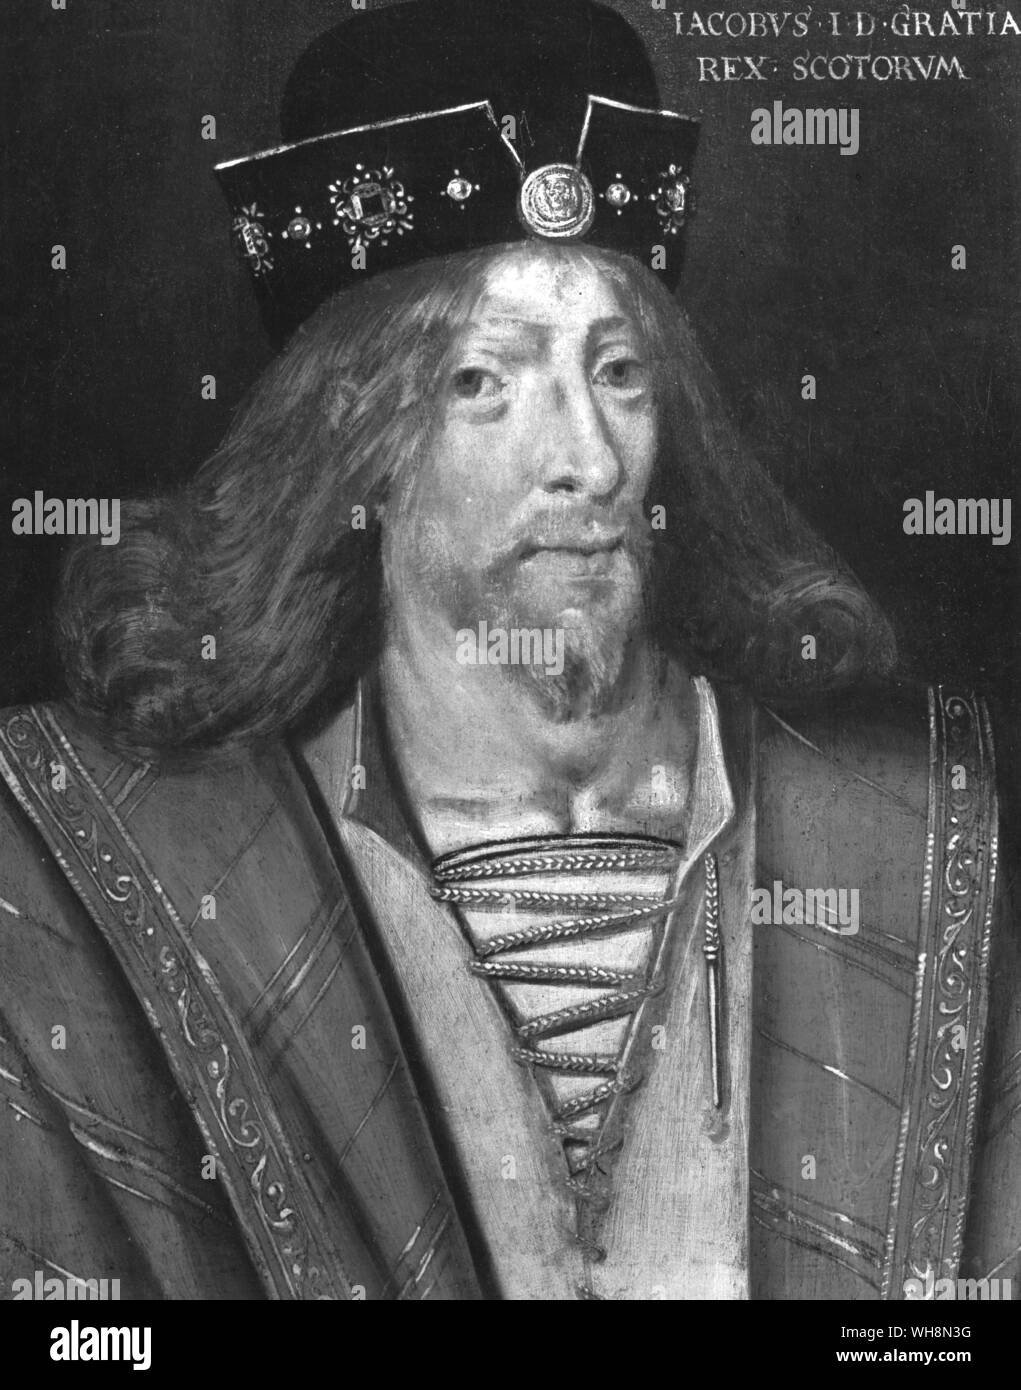 Giacomo I di Scozia 1394-1437 ha trascorso gran parte della sua infanzia un prigioniero della lingua inglese prima i suoi connazionali hanno concordato per il suo riscatto Foto Stock